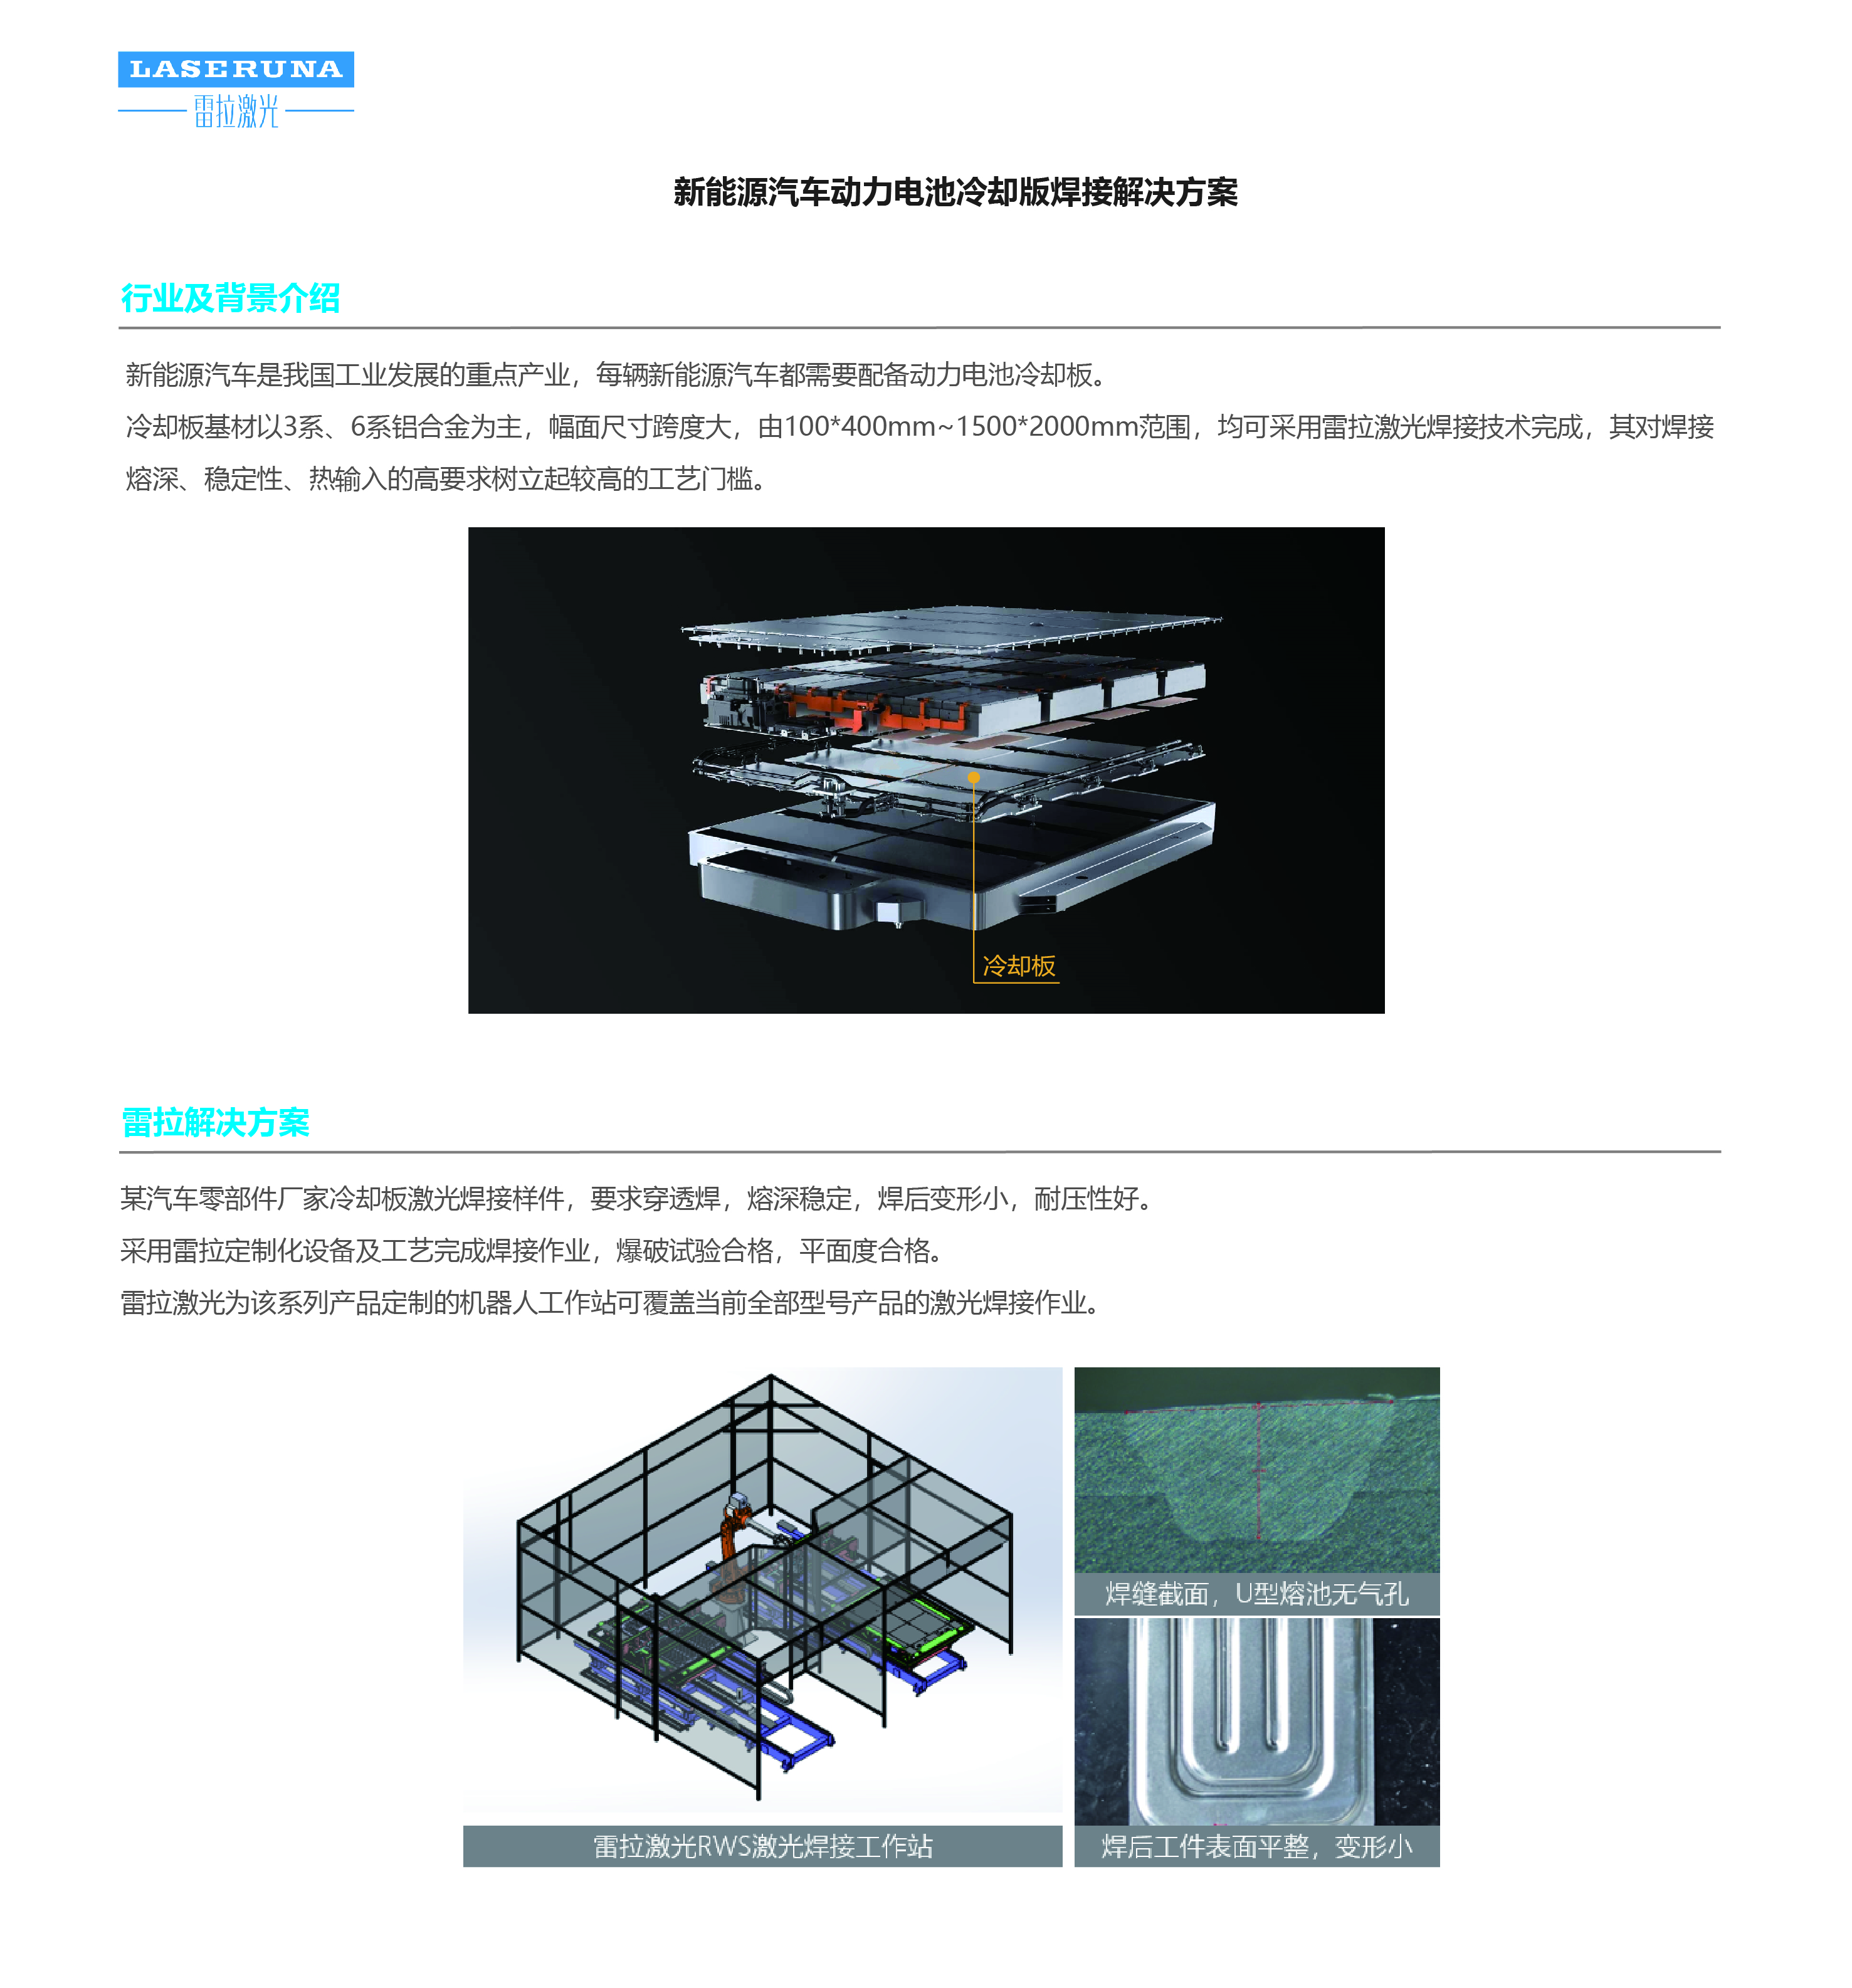 4-新能源汽車_汽車冷卻版激光焊接解決方案_20200529_214317925